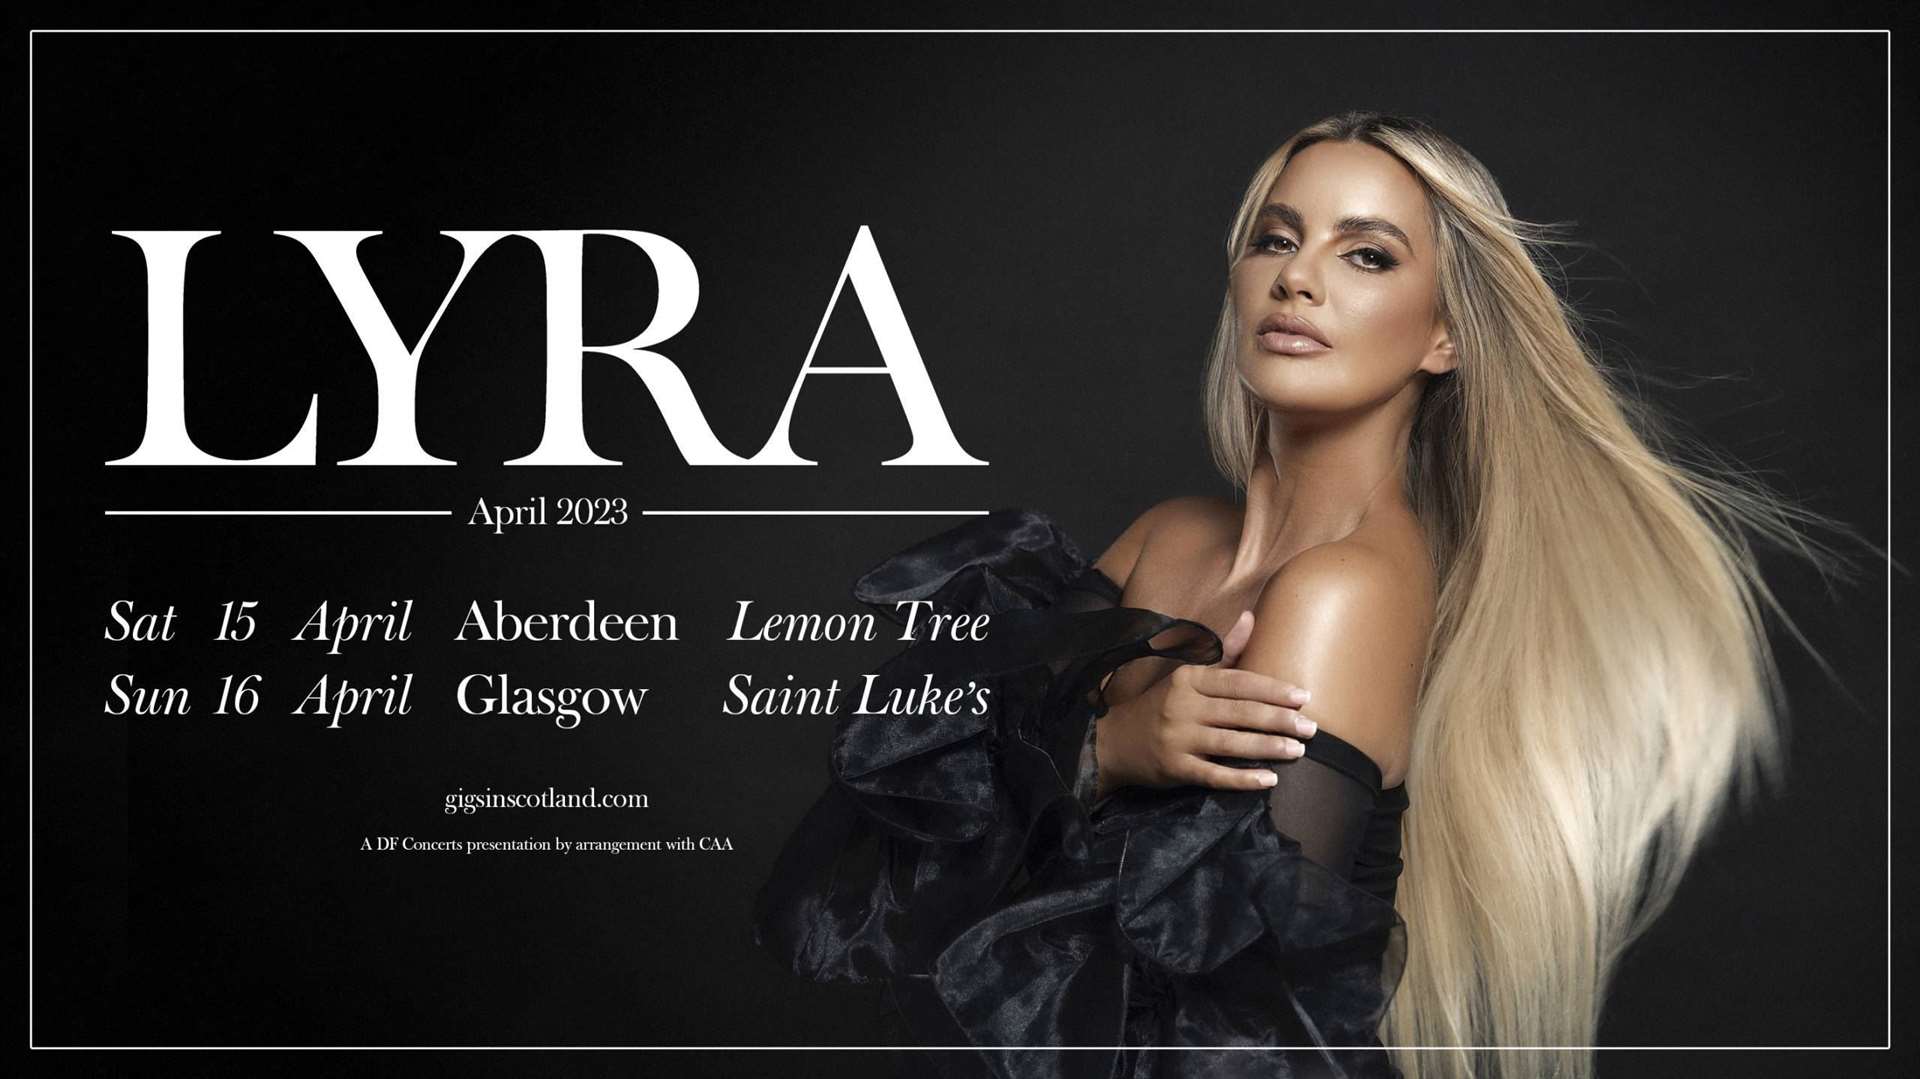 Irish singer-songwriter Lyra will be performing at the Lemon Tree.